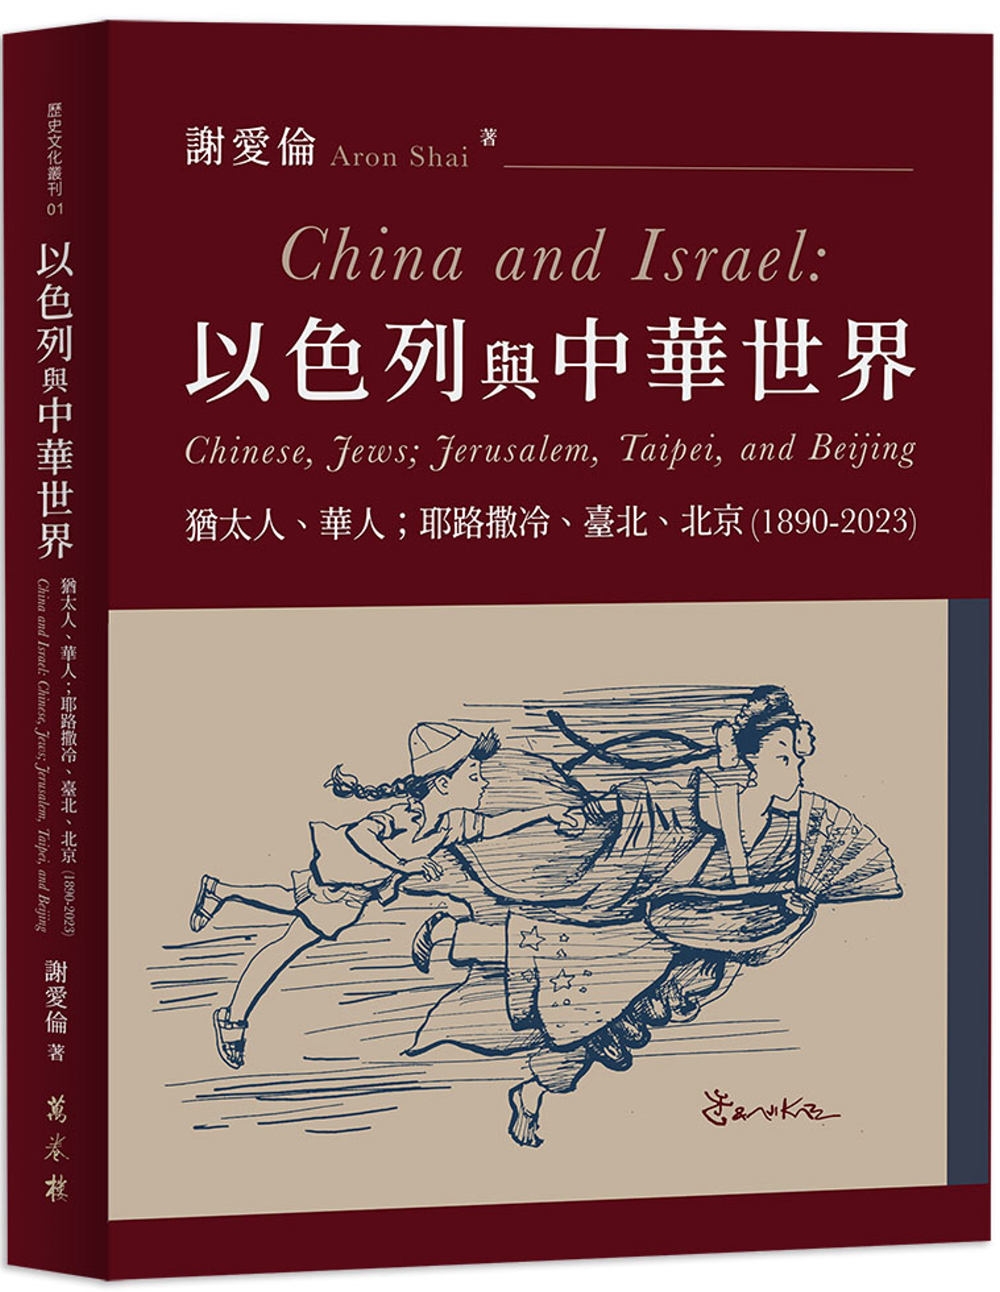 以色列與中華世界：猶太人、華人；耶路撒冷、臺北、北京（189...